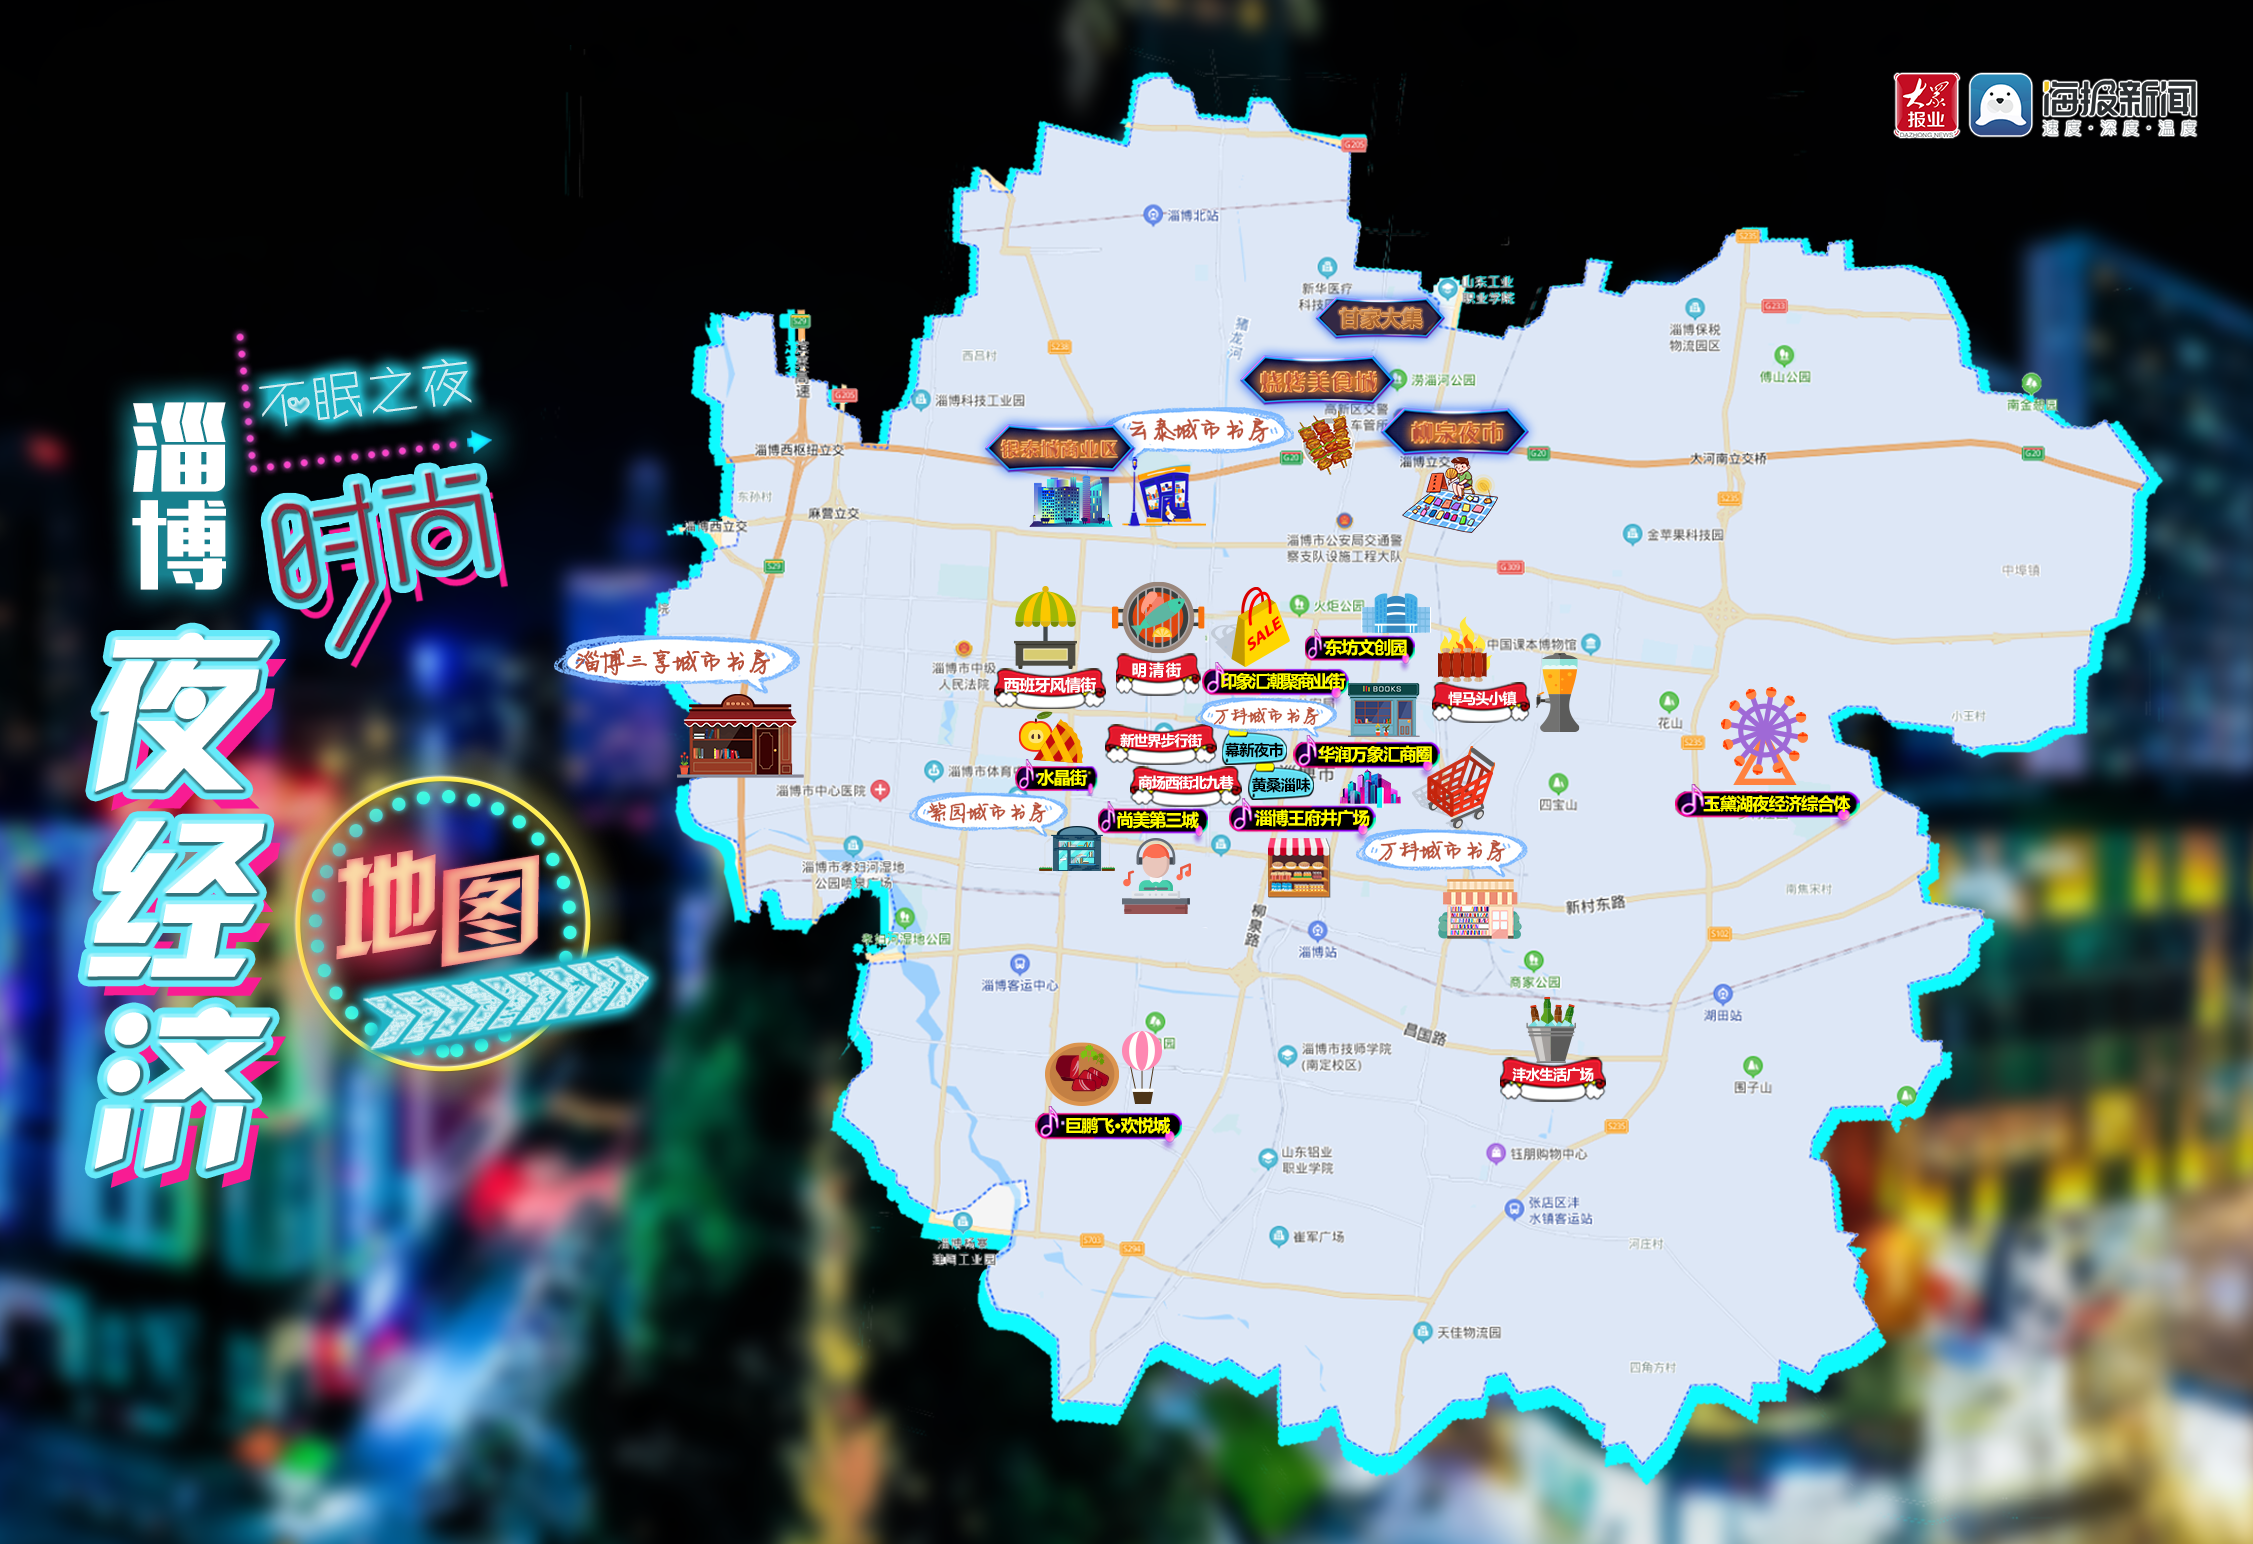 淄博中心城区夜经济地图出炉!上哪玩看这里